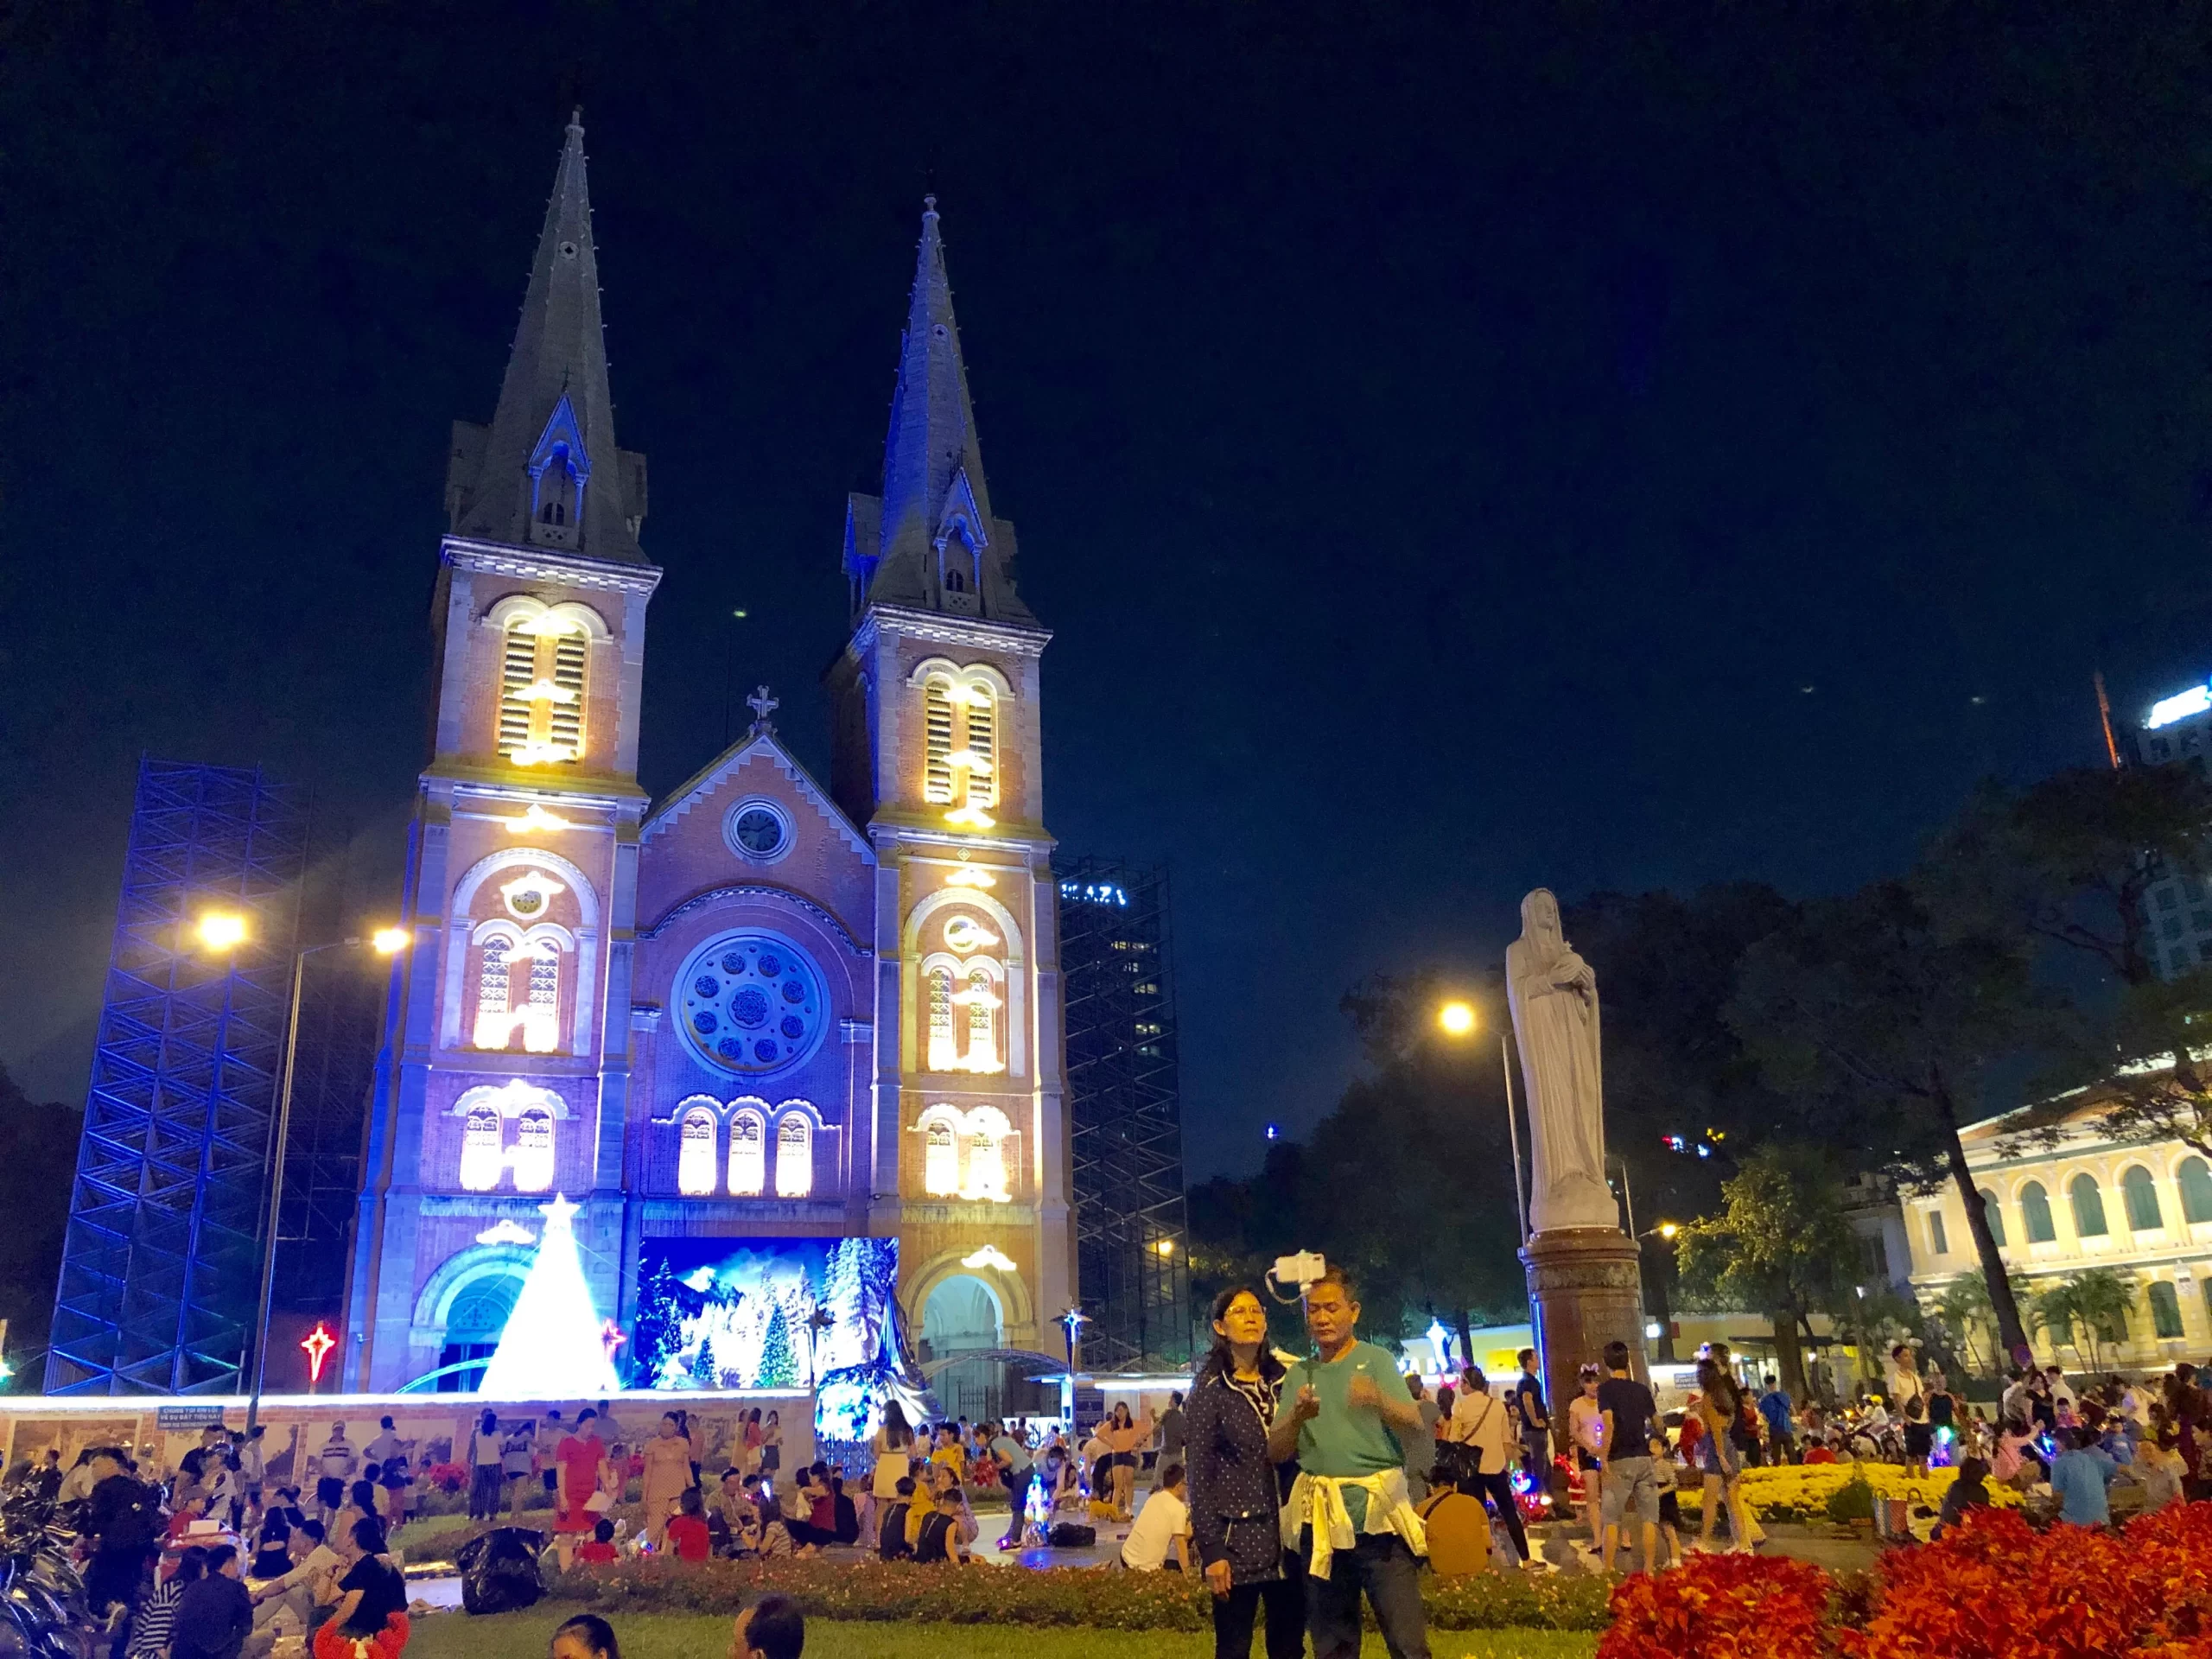 Du lịch Sài Gòn vào các dịp lễ hội